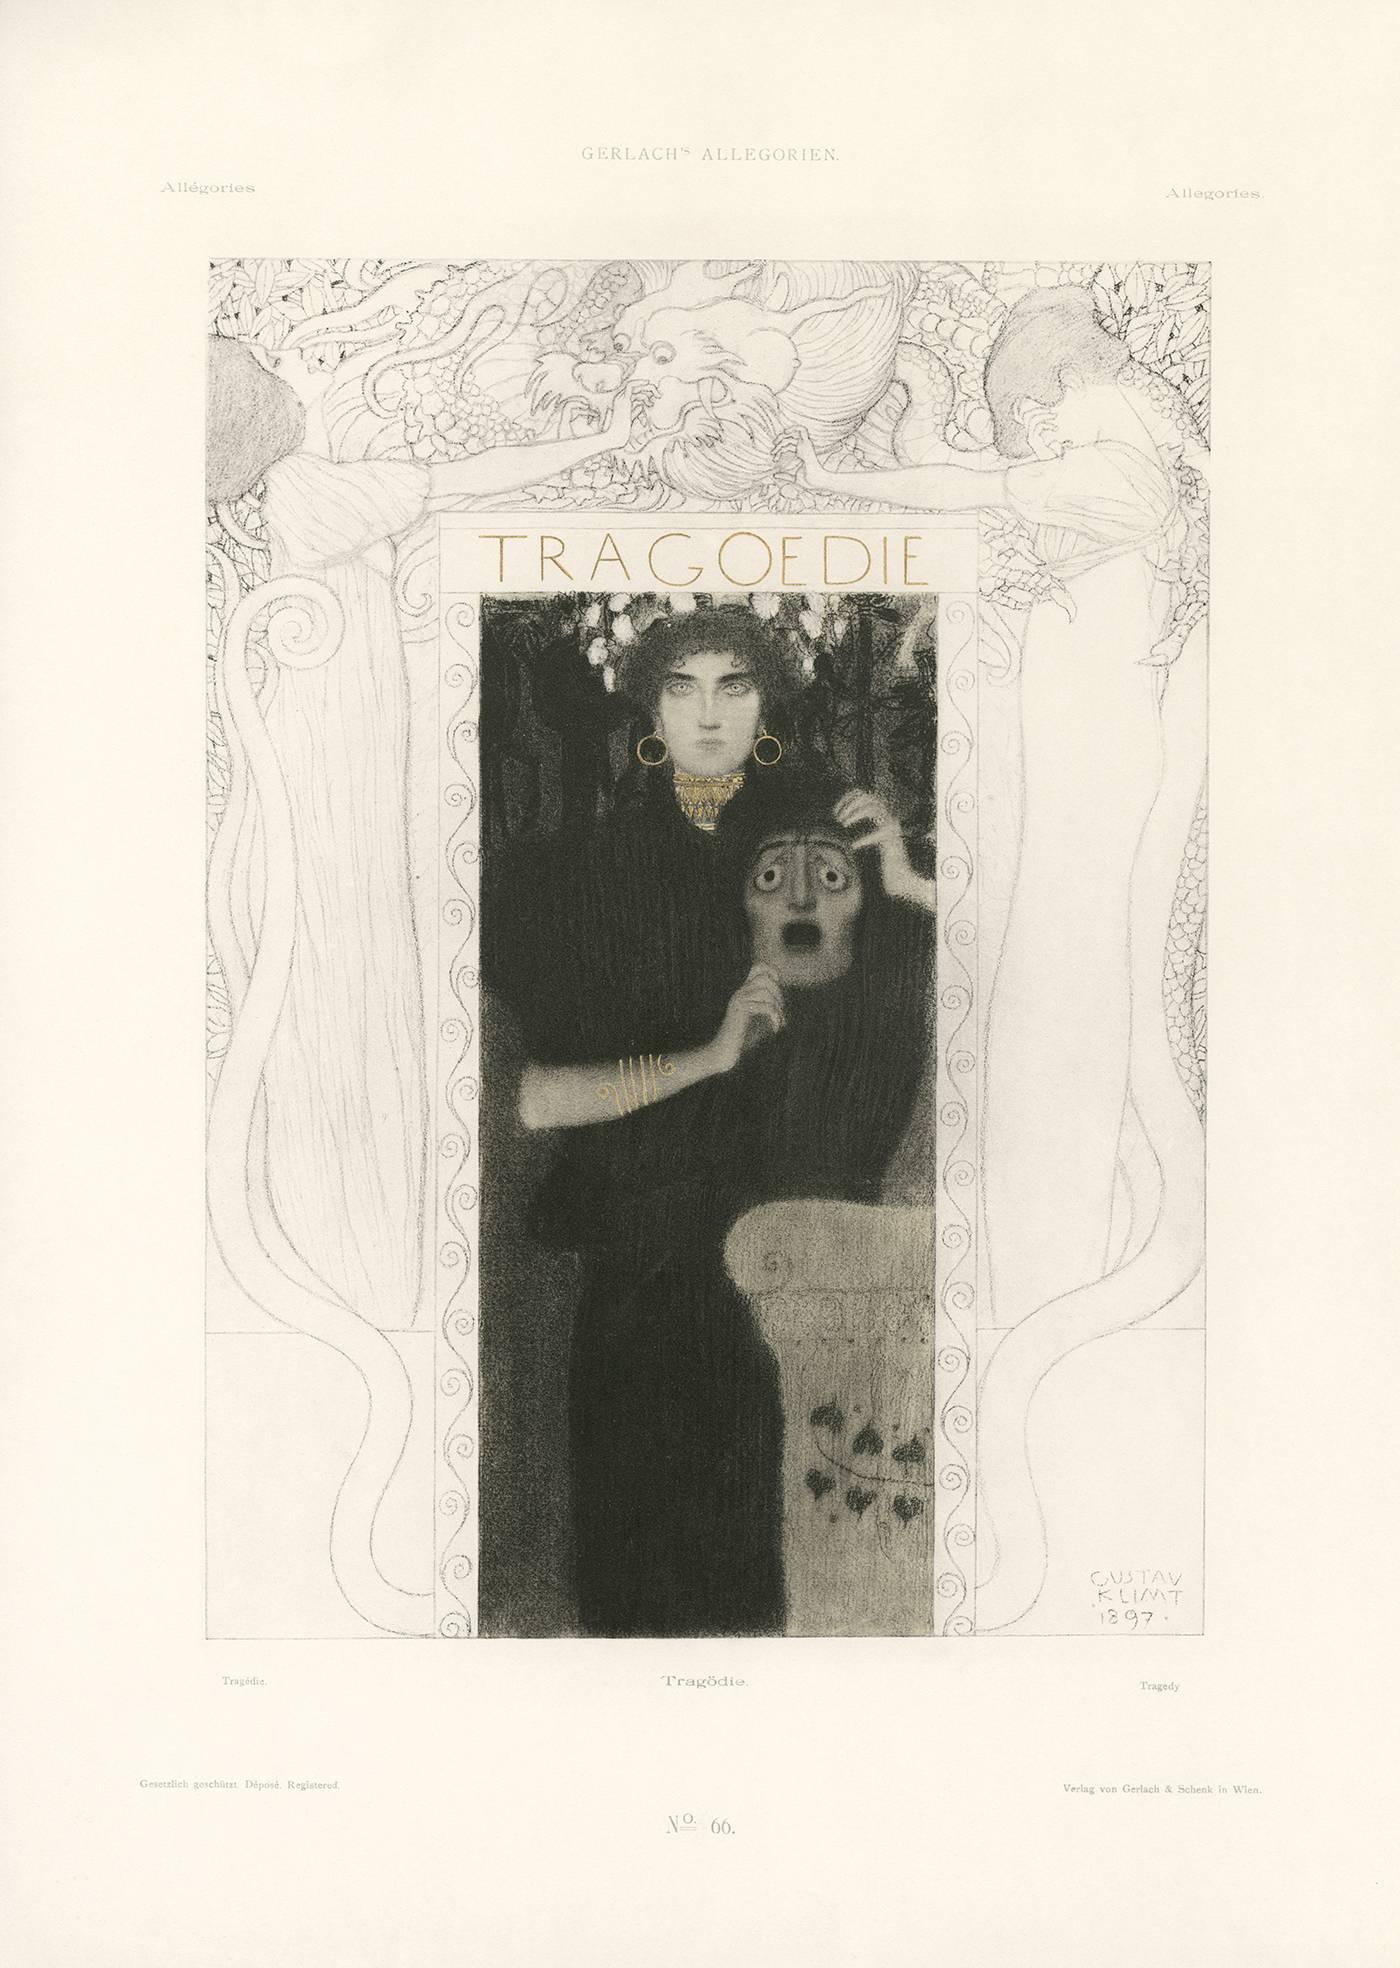 Allegorien de Gerlach, planche n°66 : Lithographie « Tragedy », Gustav Klimt.